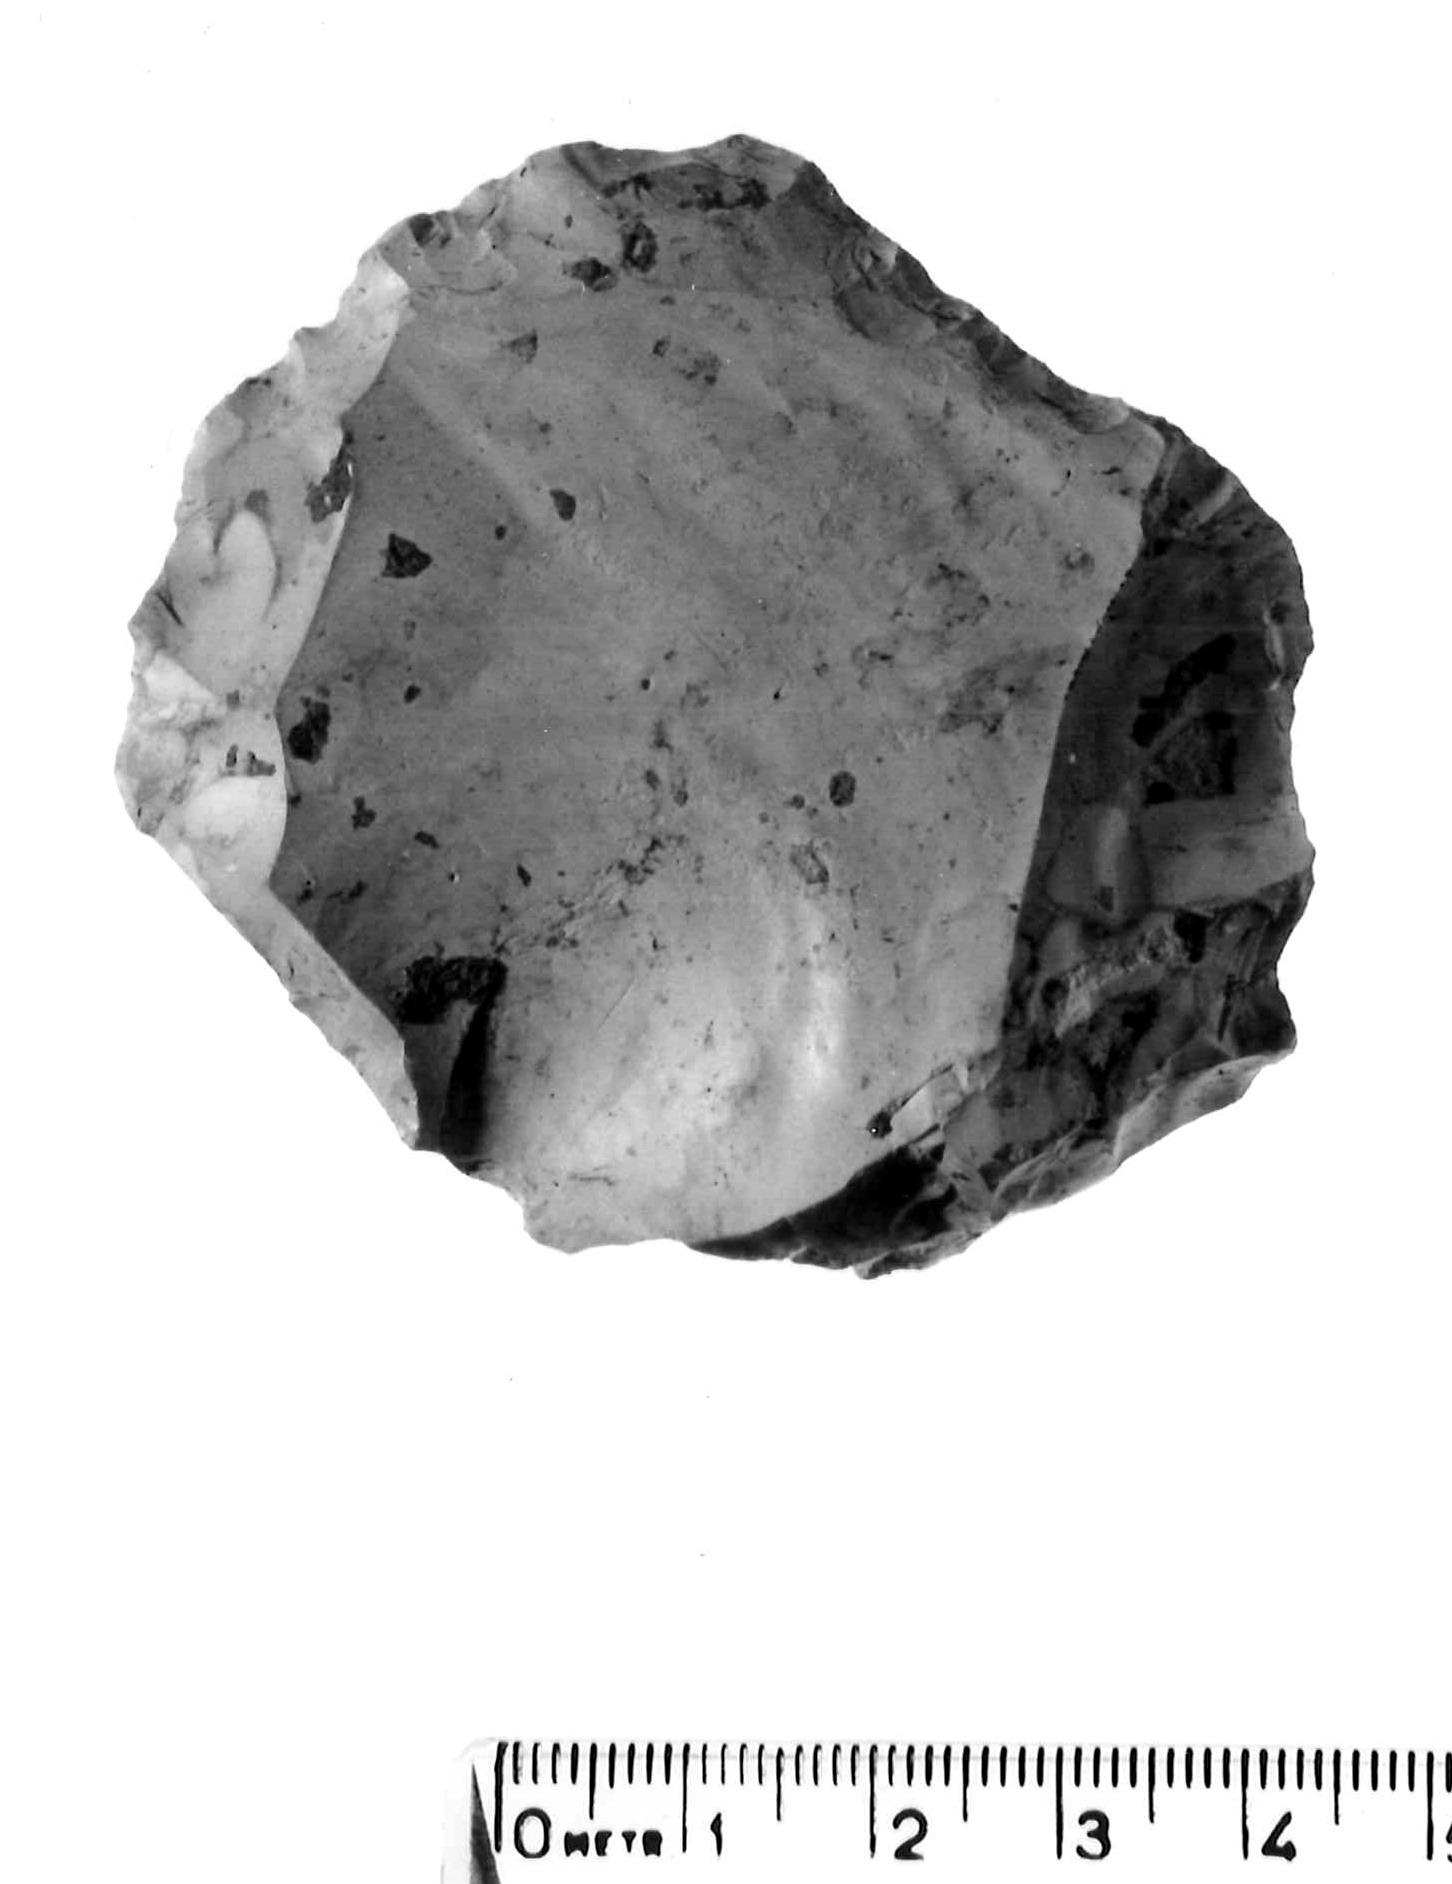 nucleo Levallois - musteriano (paleolitico medio)